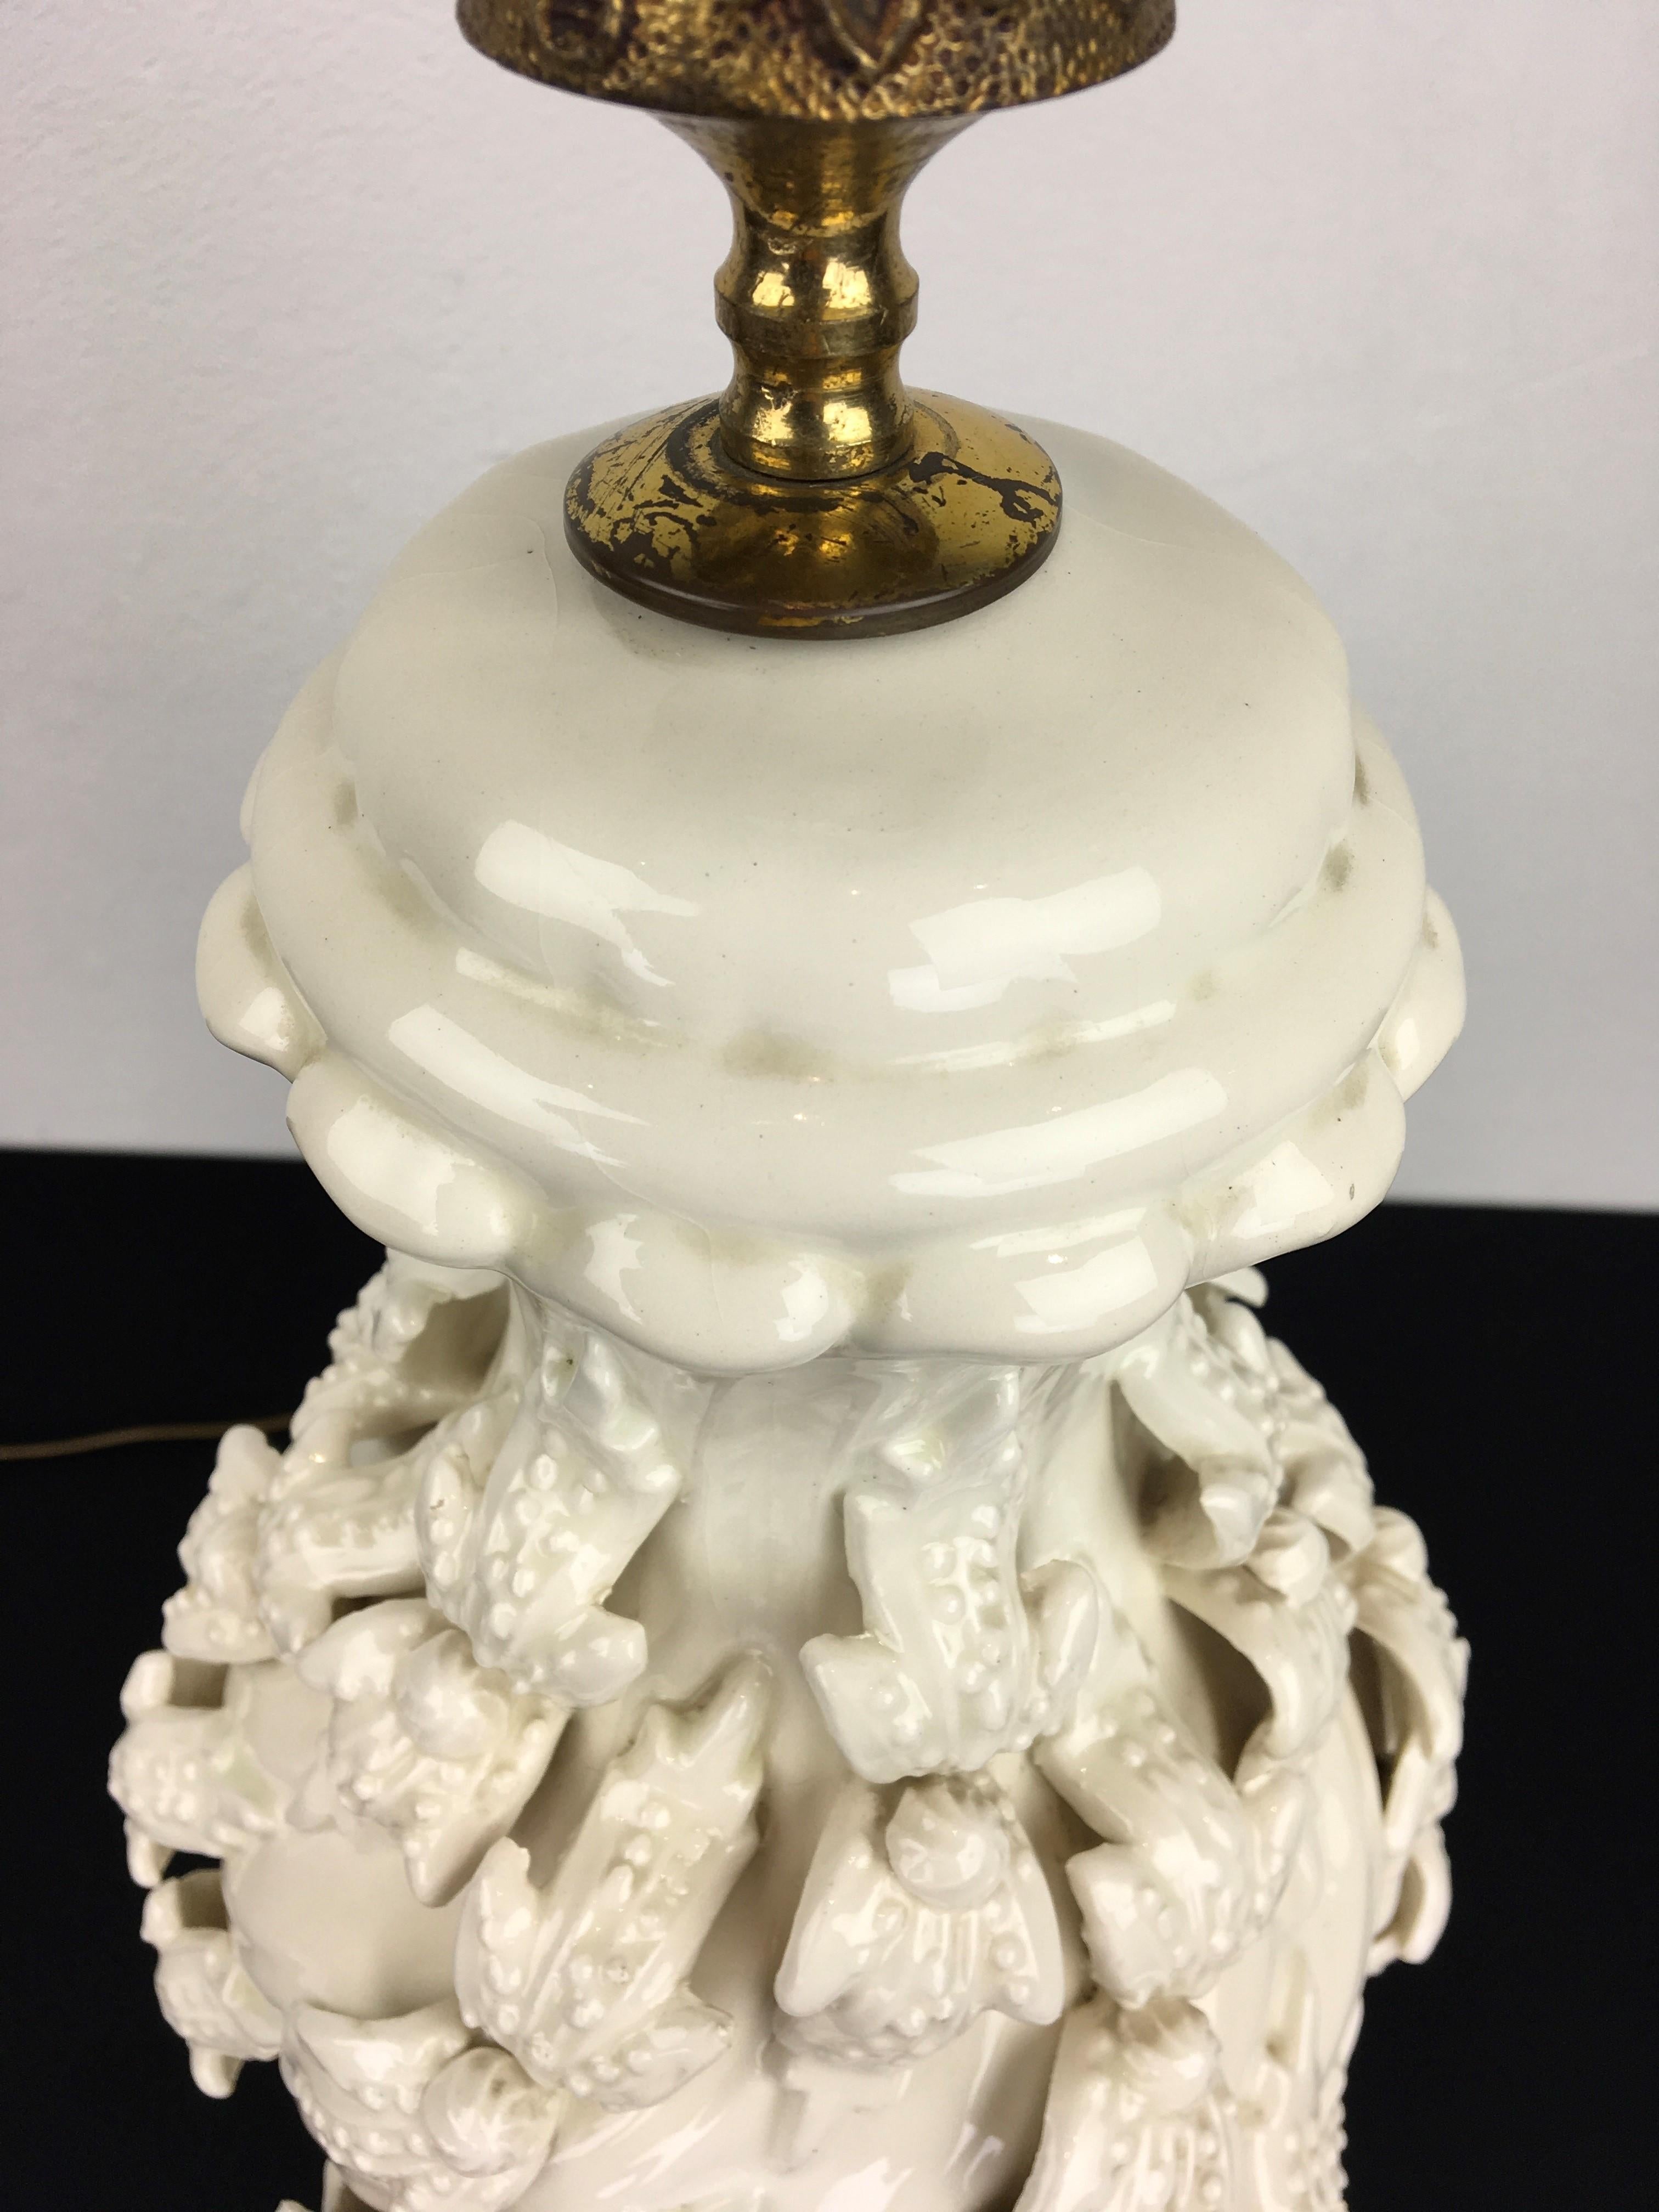 Lampe de table espagnole en céramique blanche à manises avec des fleurs. 
Cette lampe de table blanche est ornée de belles fleurs tout autour et est montée sur une base en bois doré.
Une lampe de table en céramique sculpturale émaillée blanche des